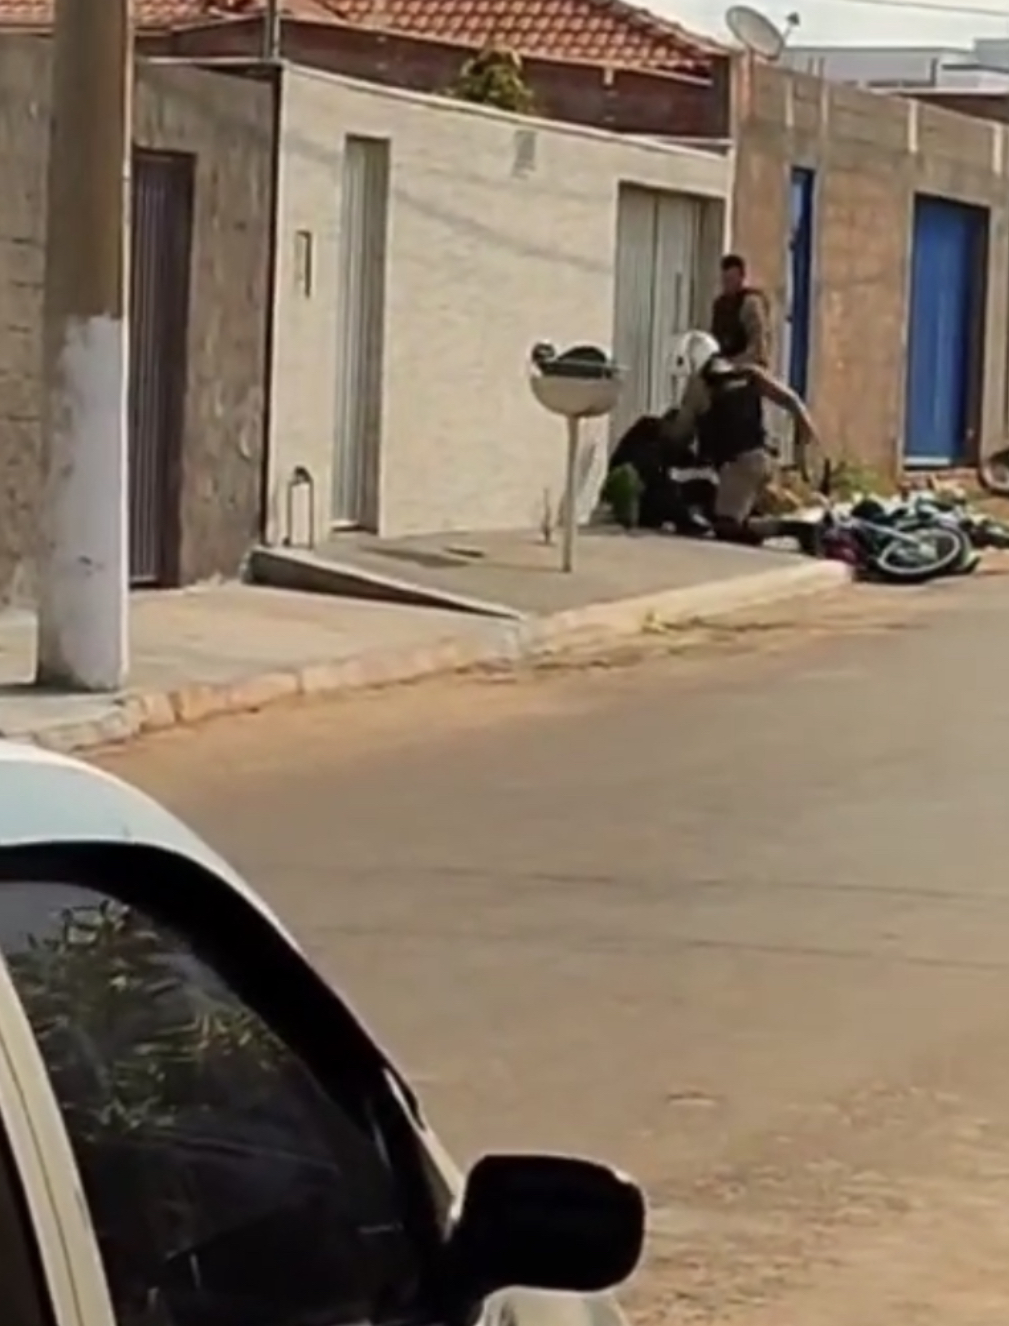 Motociclista de 18 anos é imobilizado e surrado por dois policiais após não obedecer ordem de parada em Capelinha